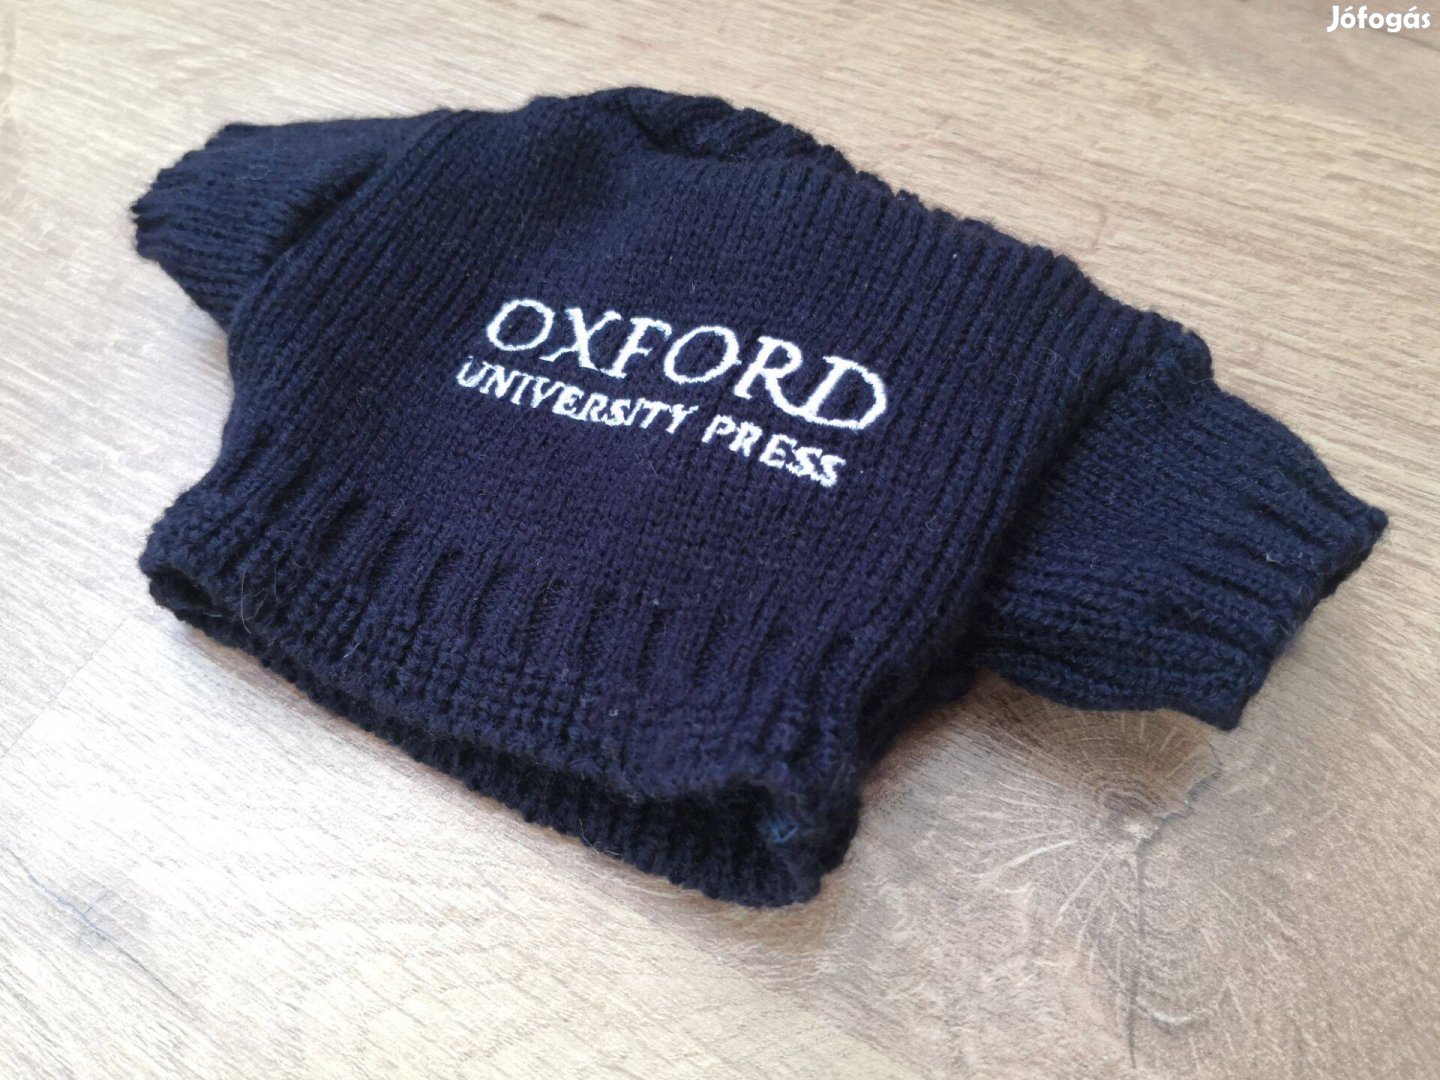 Új! Oxford University press mini kötött pulcsi